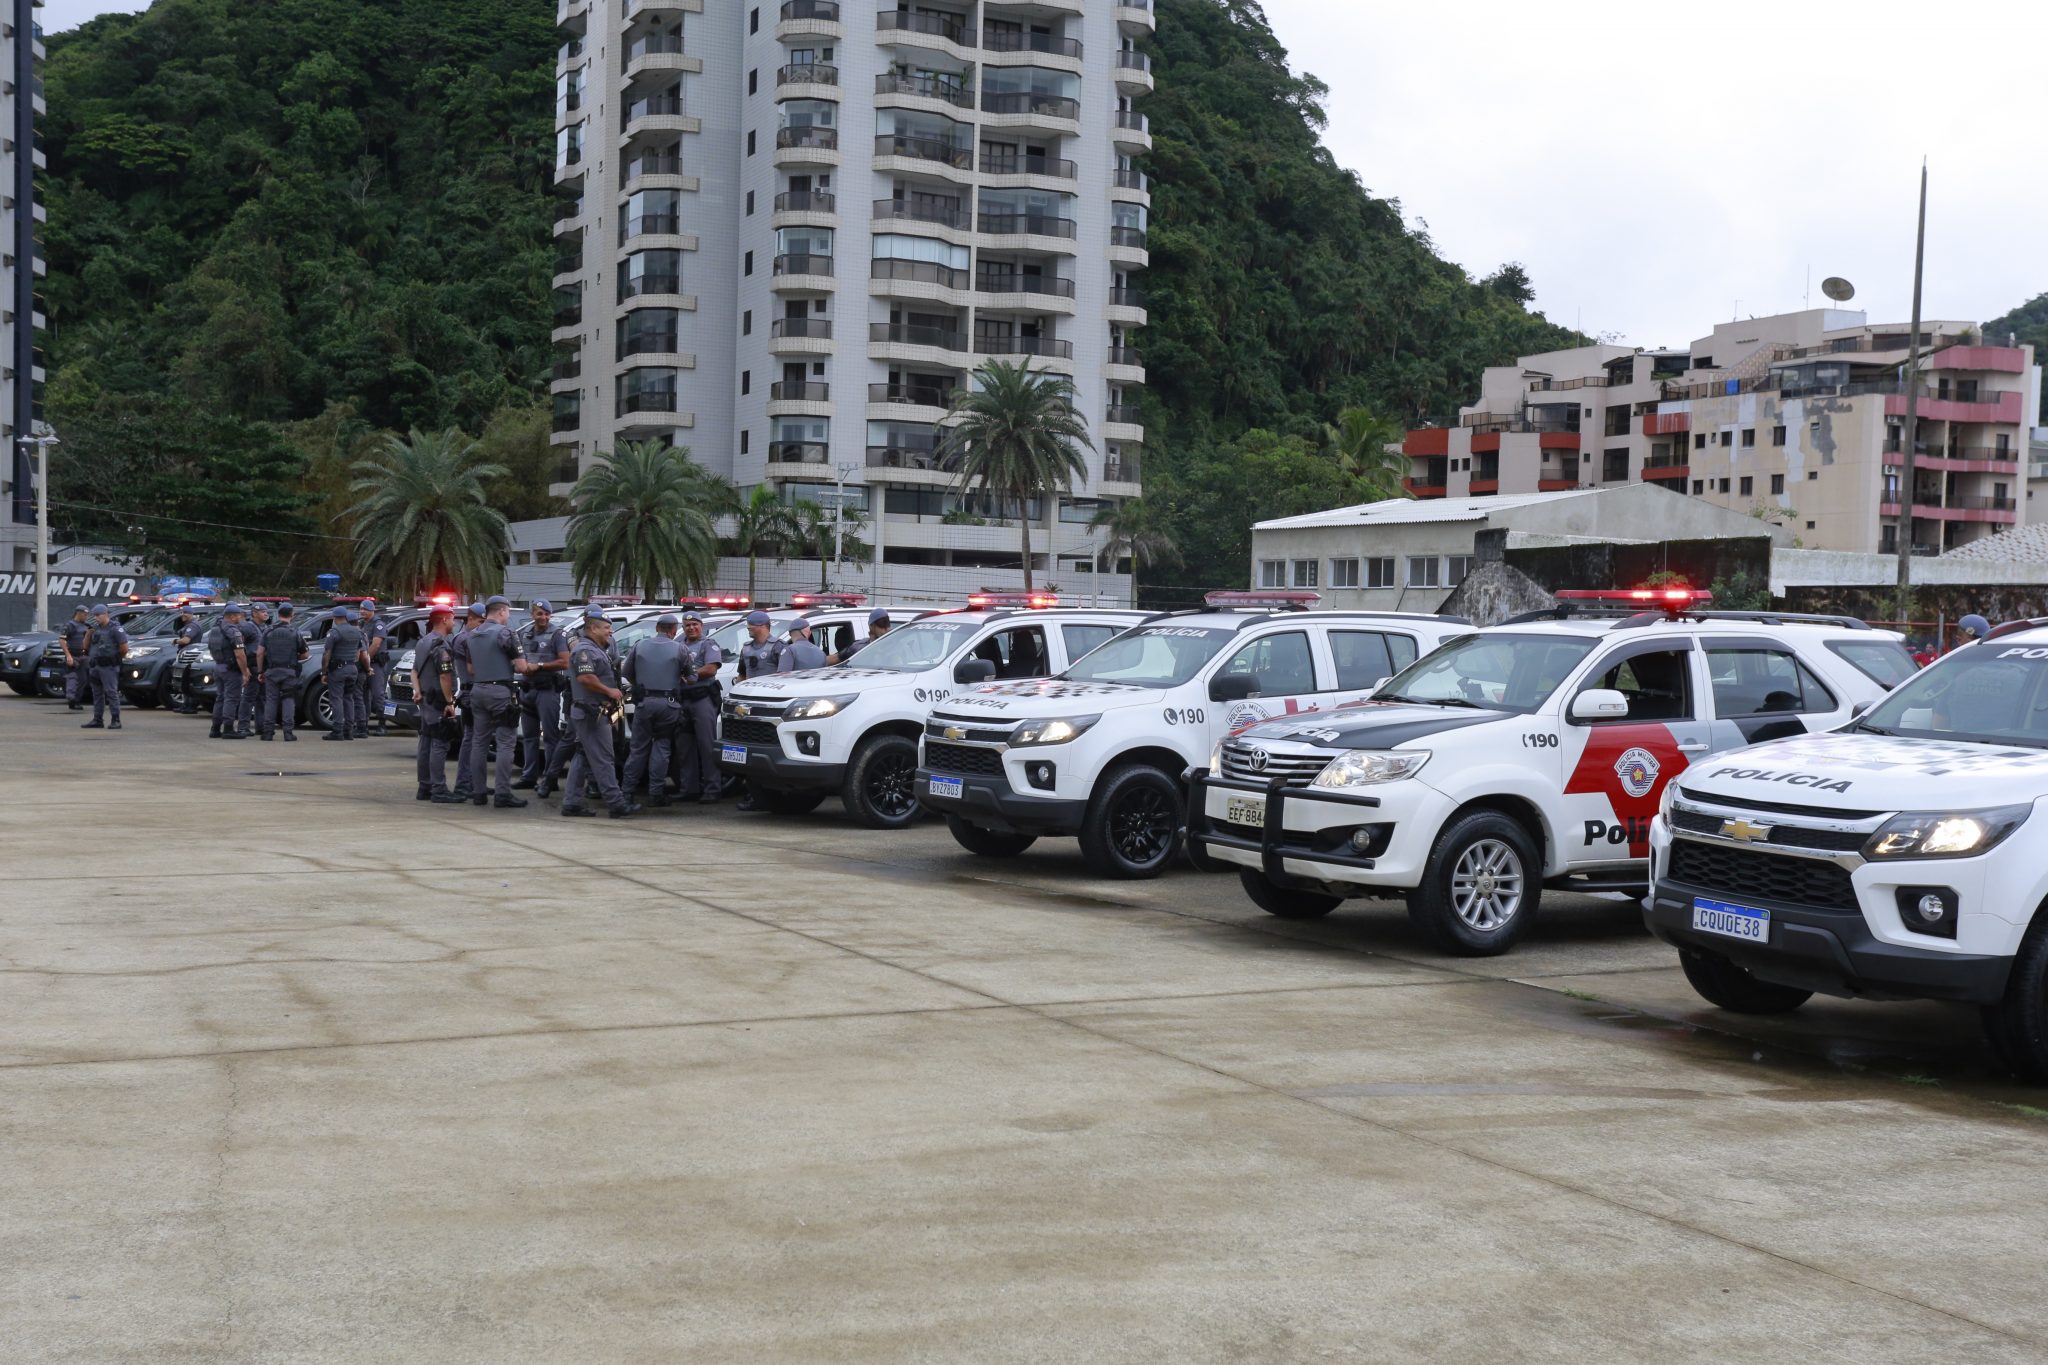 Operação Verão da PM de SP será lançada em Guarujá nesta terça-feira